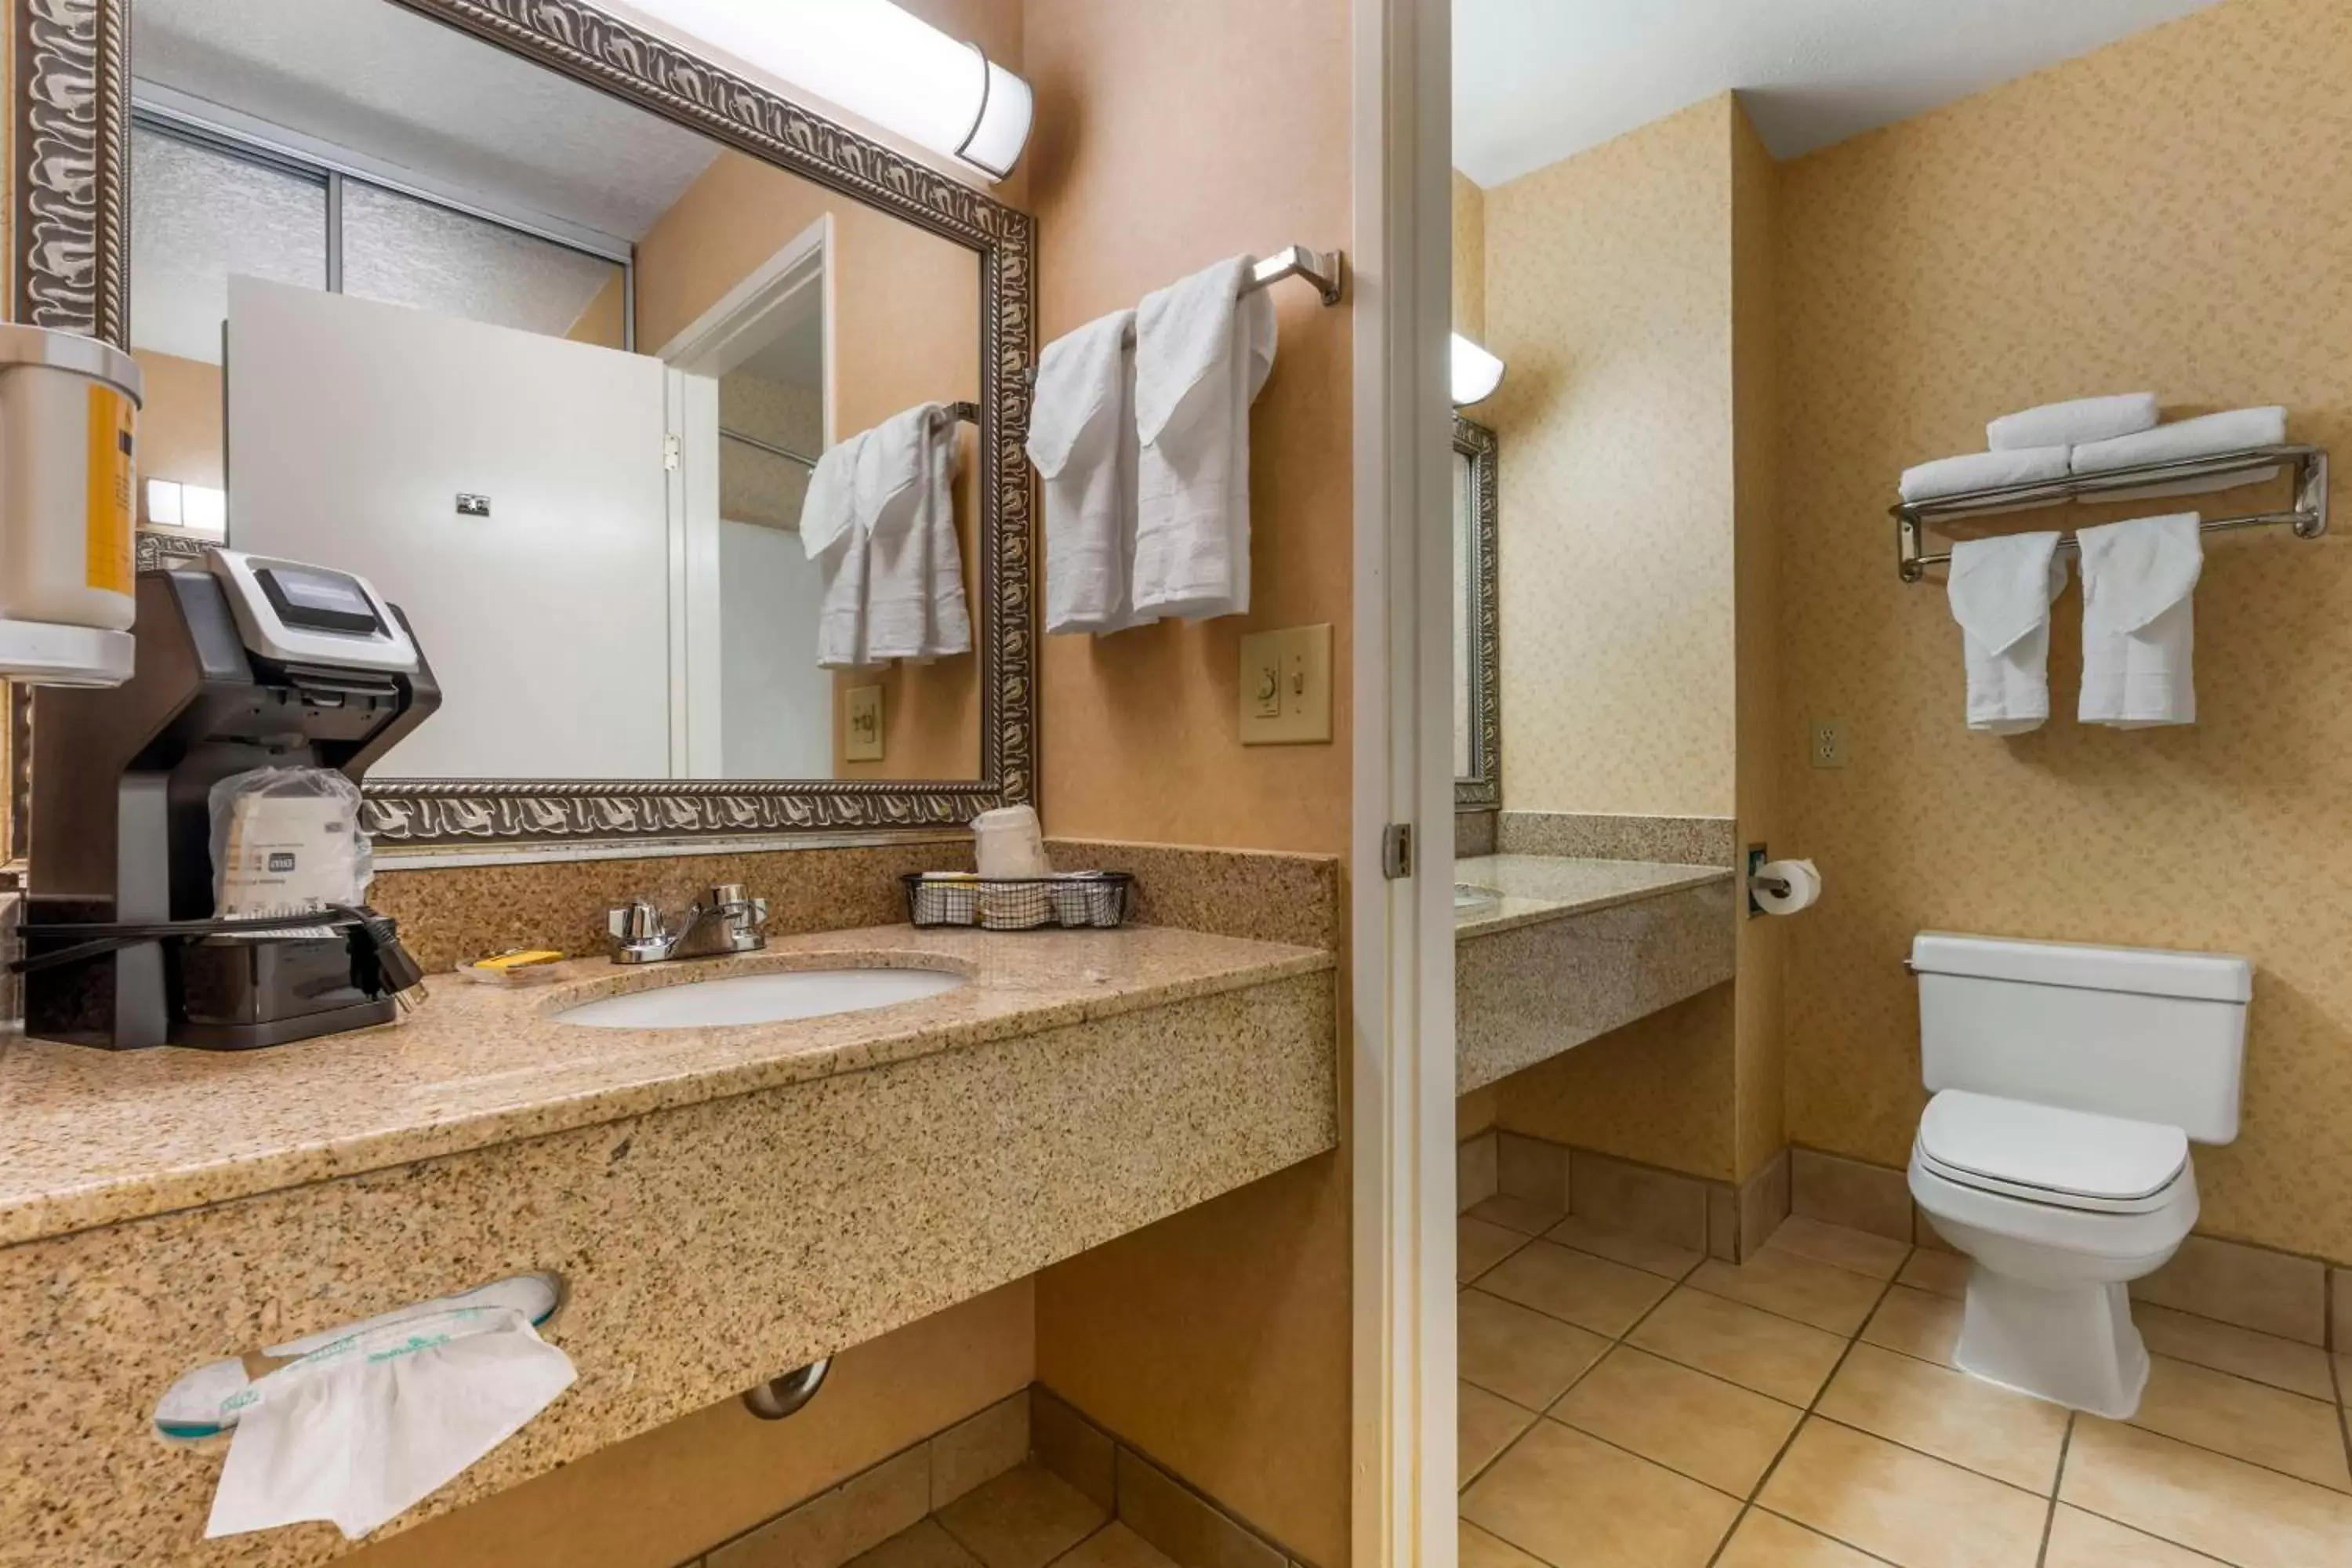 Bedroom, Bathroom in Best Western Plus Placerville Inn